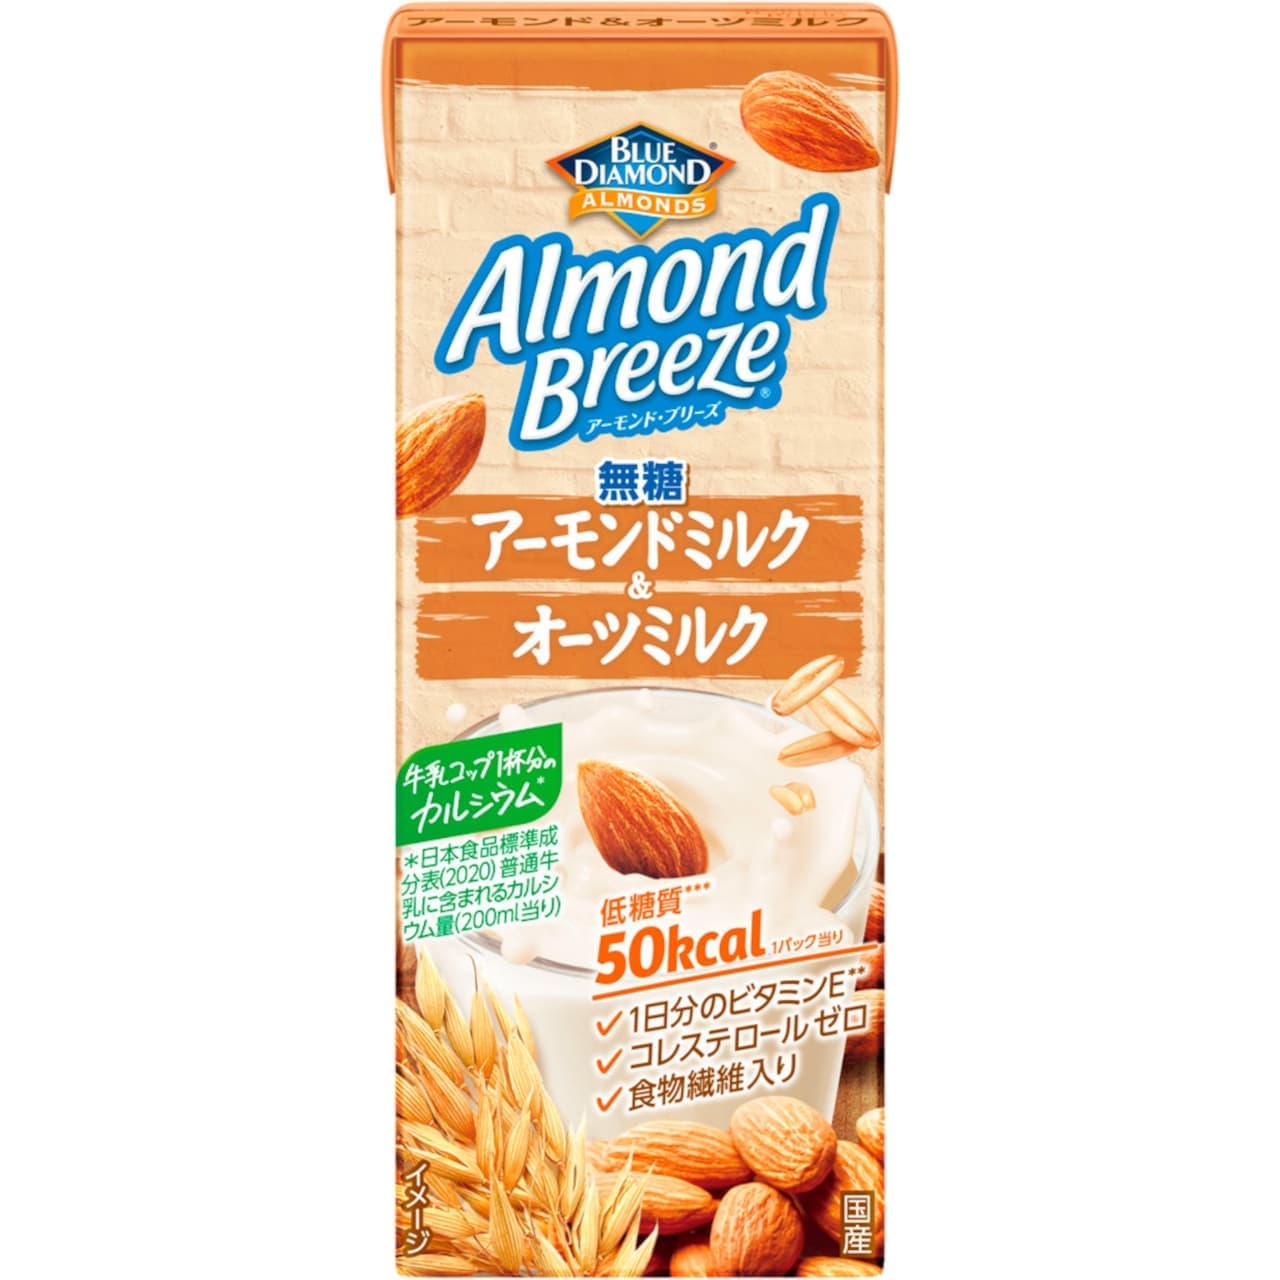 Pokka Sapporo "Almond Breeze Almond Milk & Oats Milk Unsweetened".